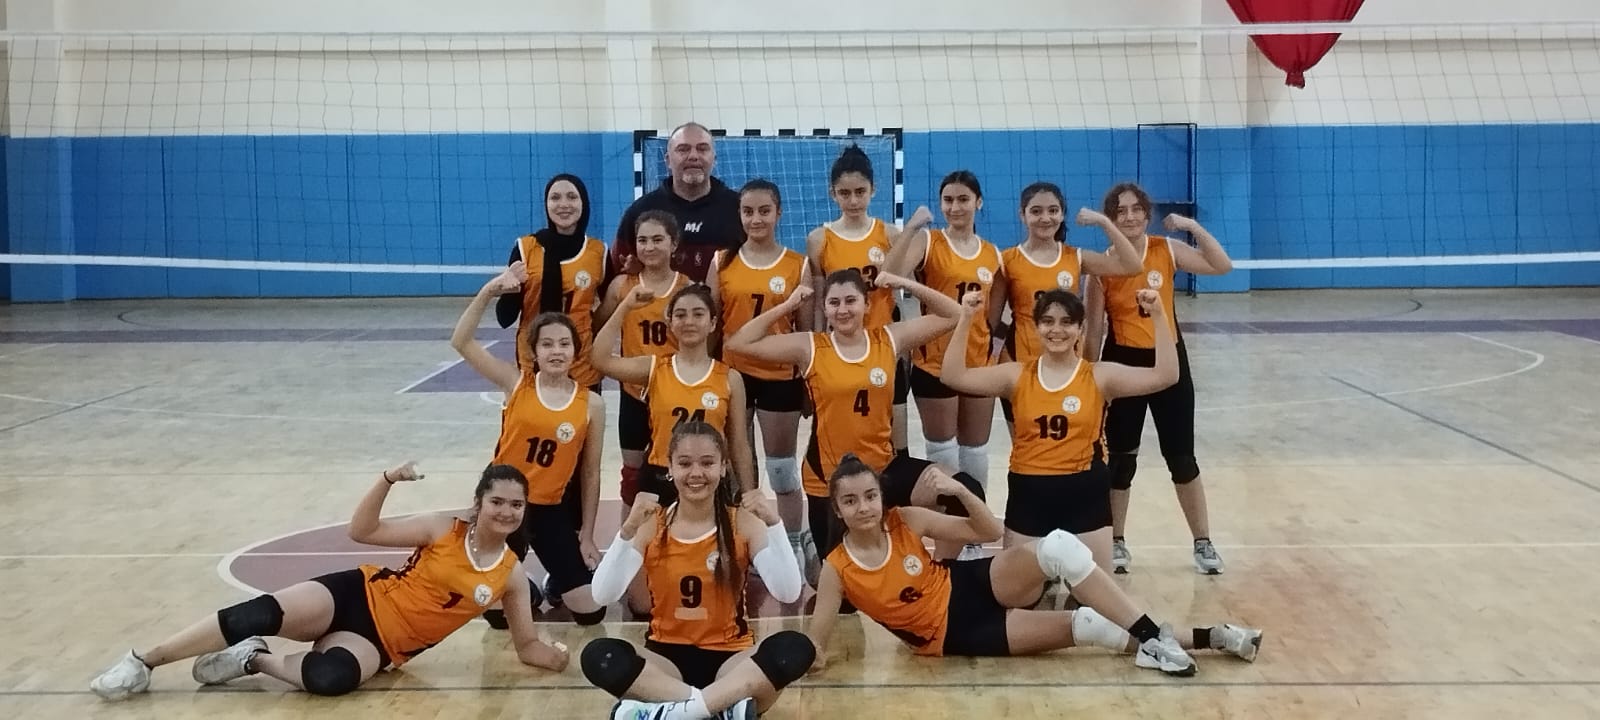 Kula Belediyesi kız voleybol takımı rakibini 3-0 yendi